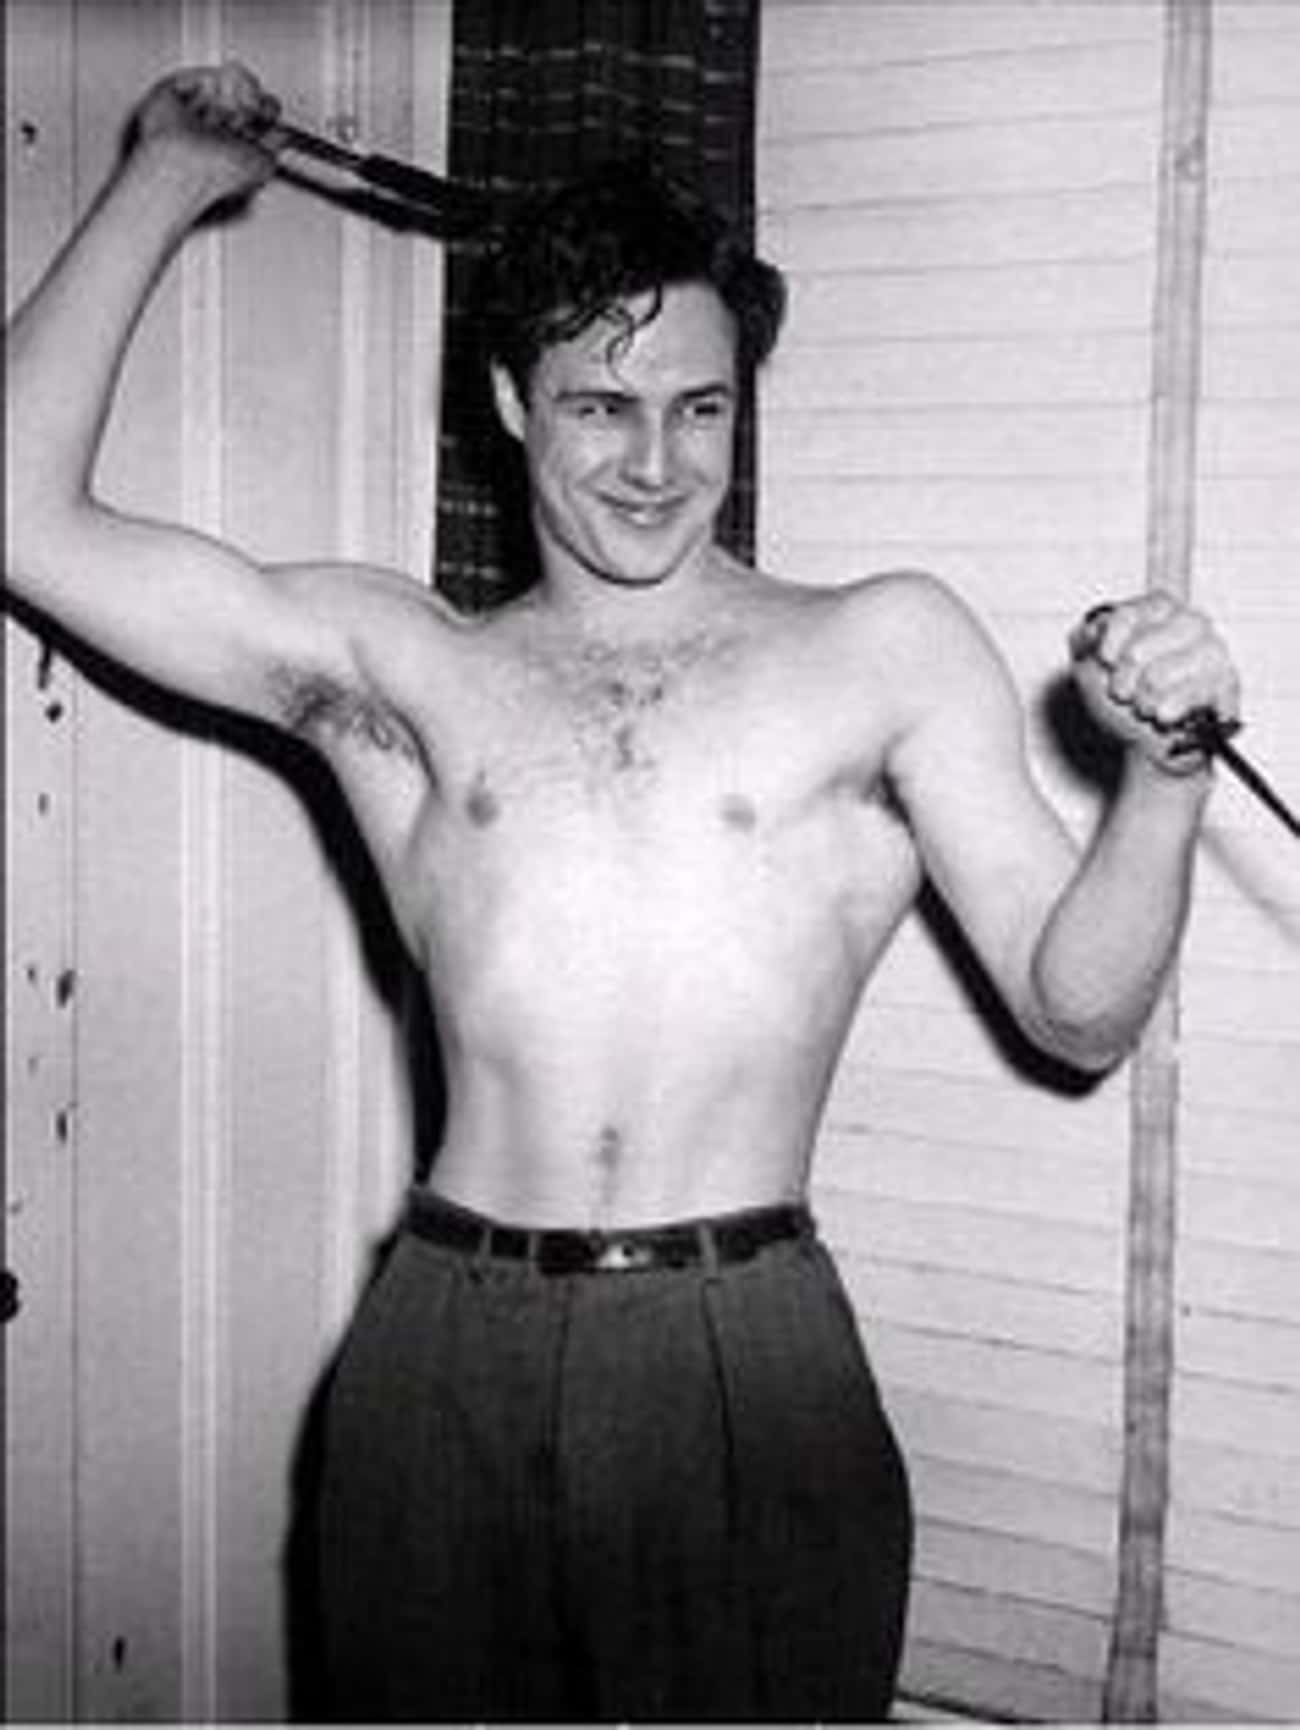 Young Marlon Brando Shirtless and Sexy